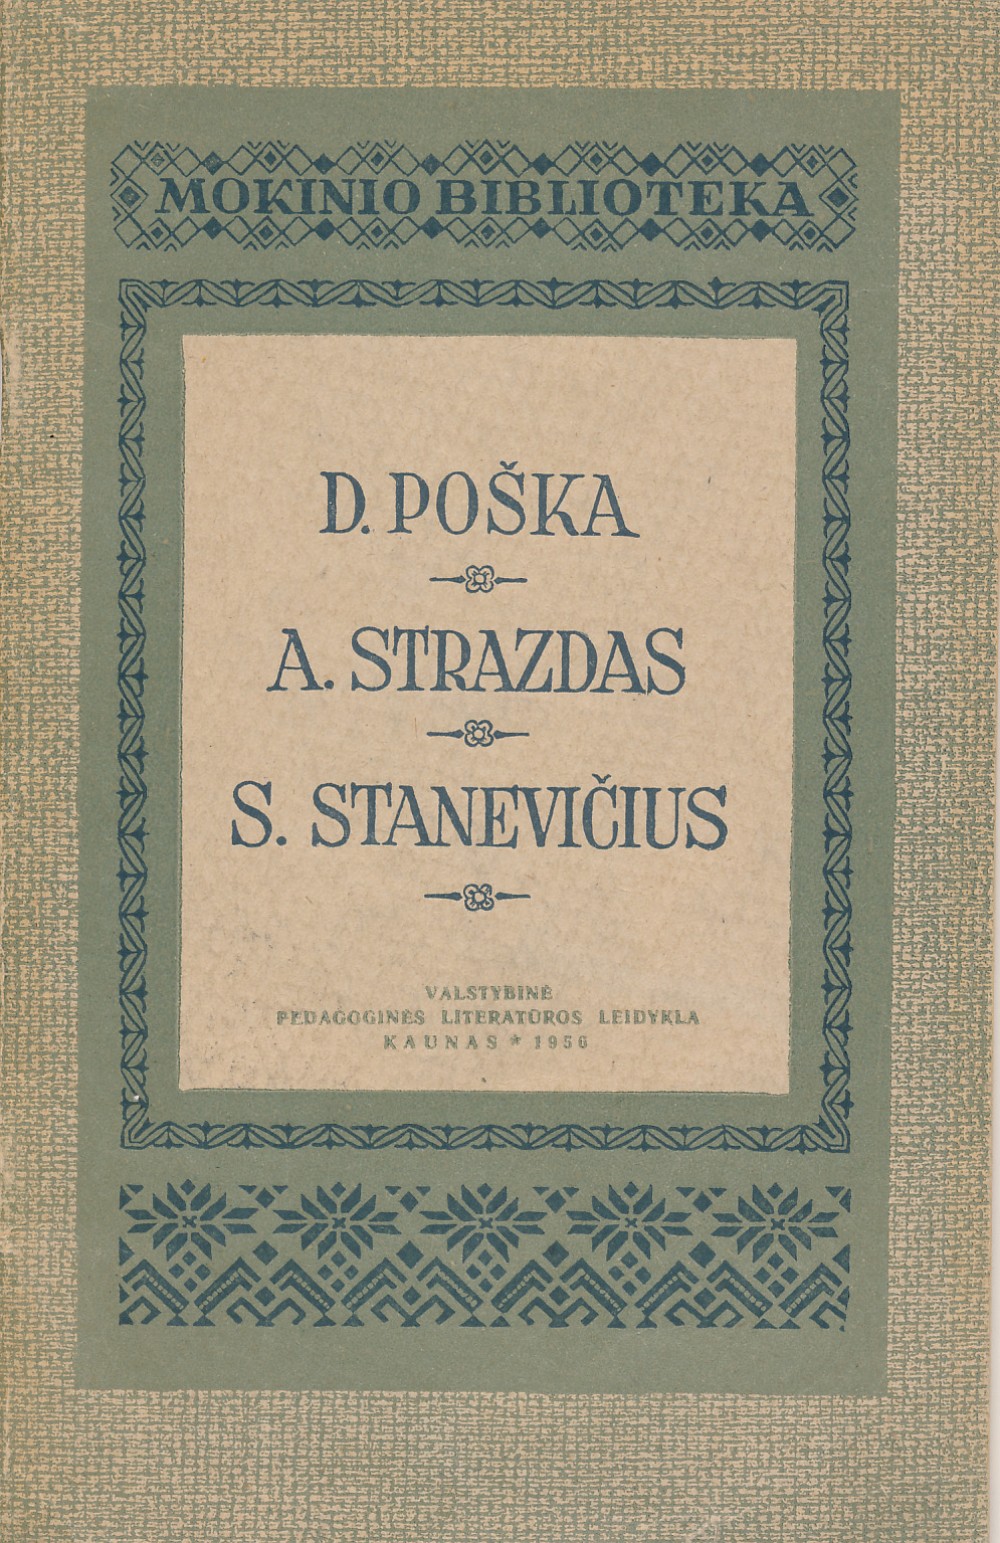 Knyga moksleiviams, kurioje spausdinama poema „Mužikas Žemaičių ir Lietuvos“ ir Adolfo Sprindžio straipsnis apie D. Pošką